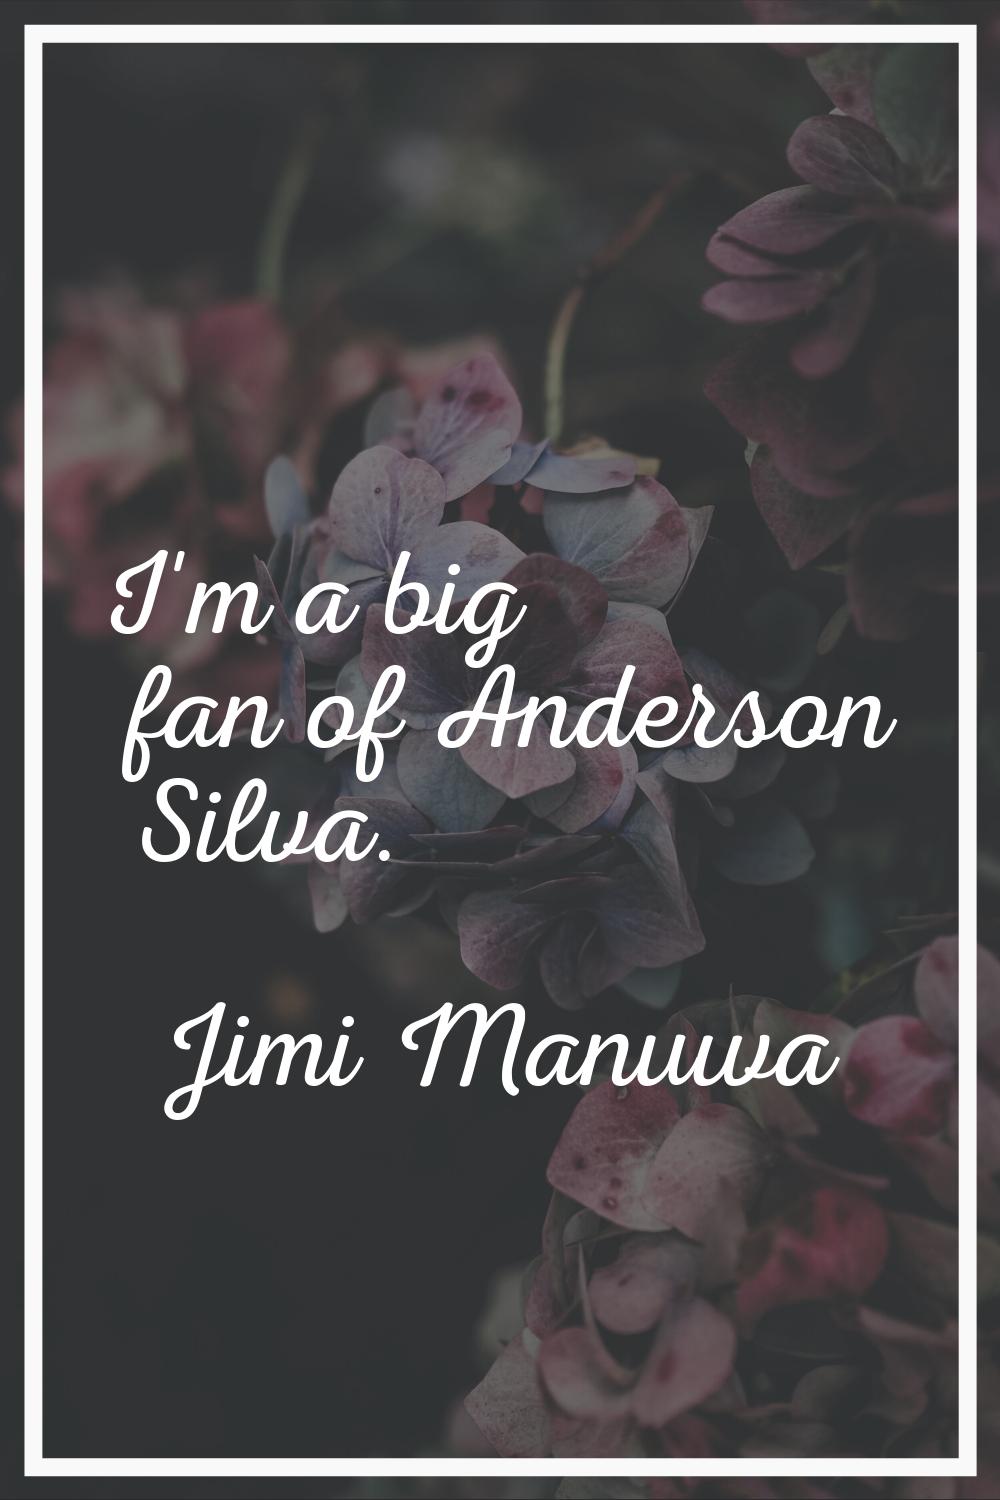 I'm a big fan of Anderson Silva.